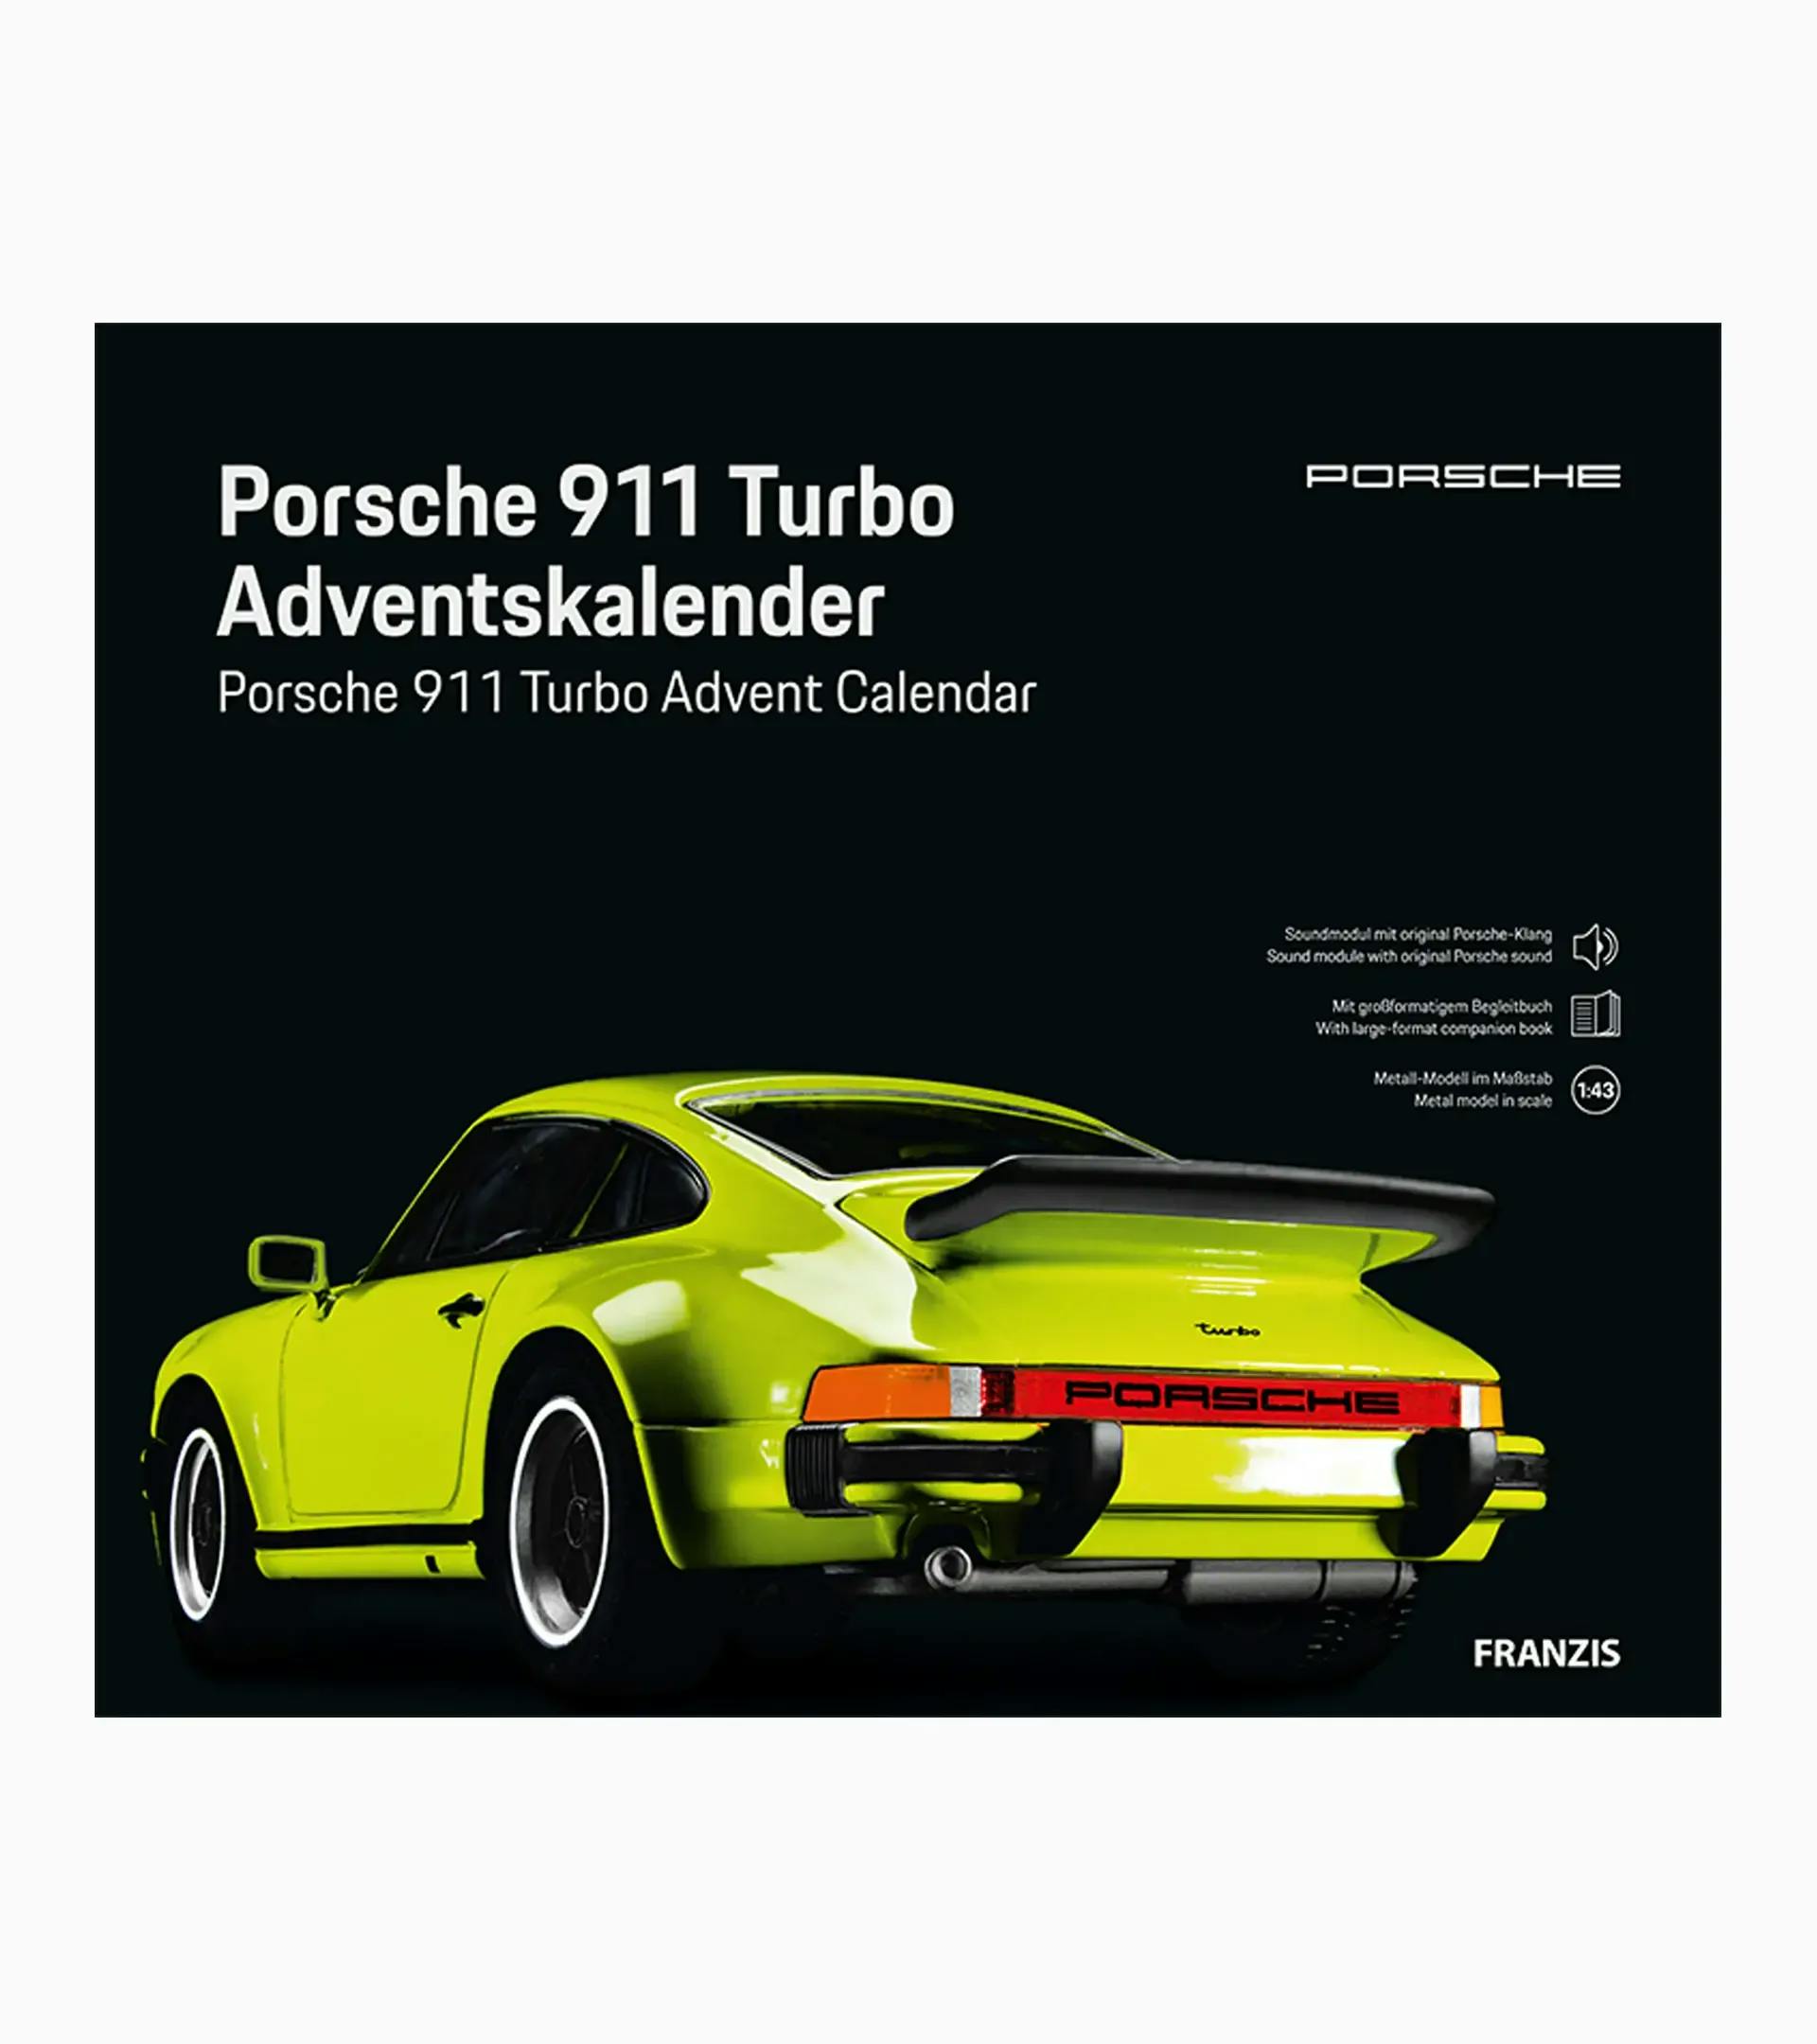 Calendario de adviento Porsche 911 Turbo 2